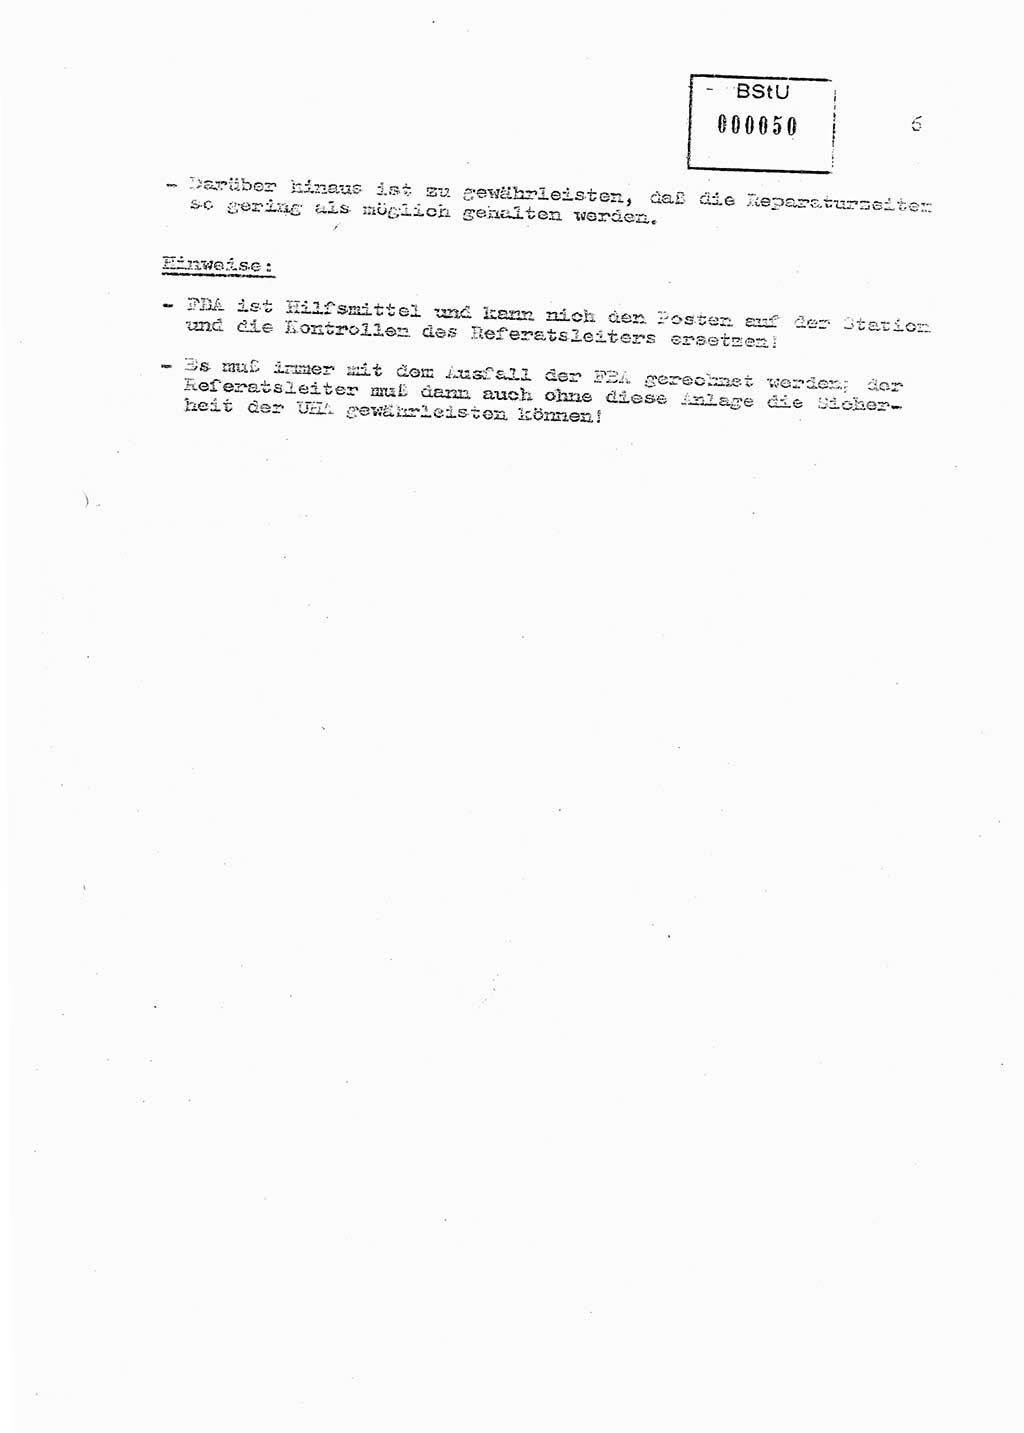 Sicherungs- und Nachrichtentechnik in UHA [Untersuchungshaftanstalten, Ministerium für Staatssicherheit, Deutsche Demokratische Republik (DDR)], Abteilung (Abt.) ⅩⅣ, Berlin 1980, Seite 6 (Si.-NT UHA MfS DDR Abt. ⅩⅣ /80 1980, S. 6)